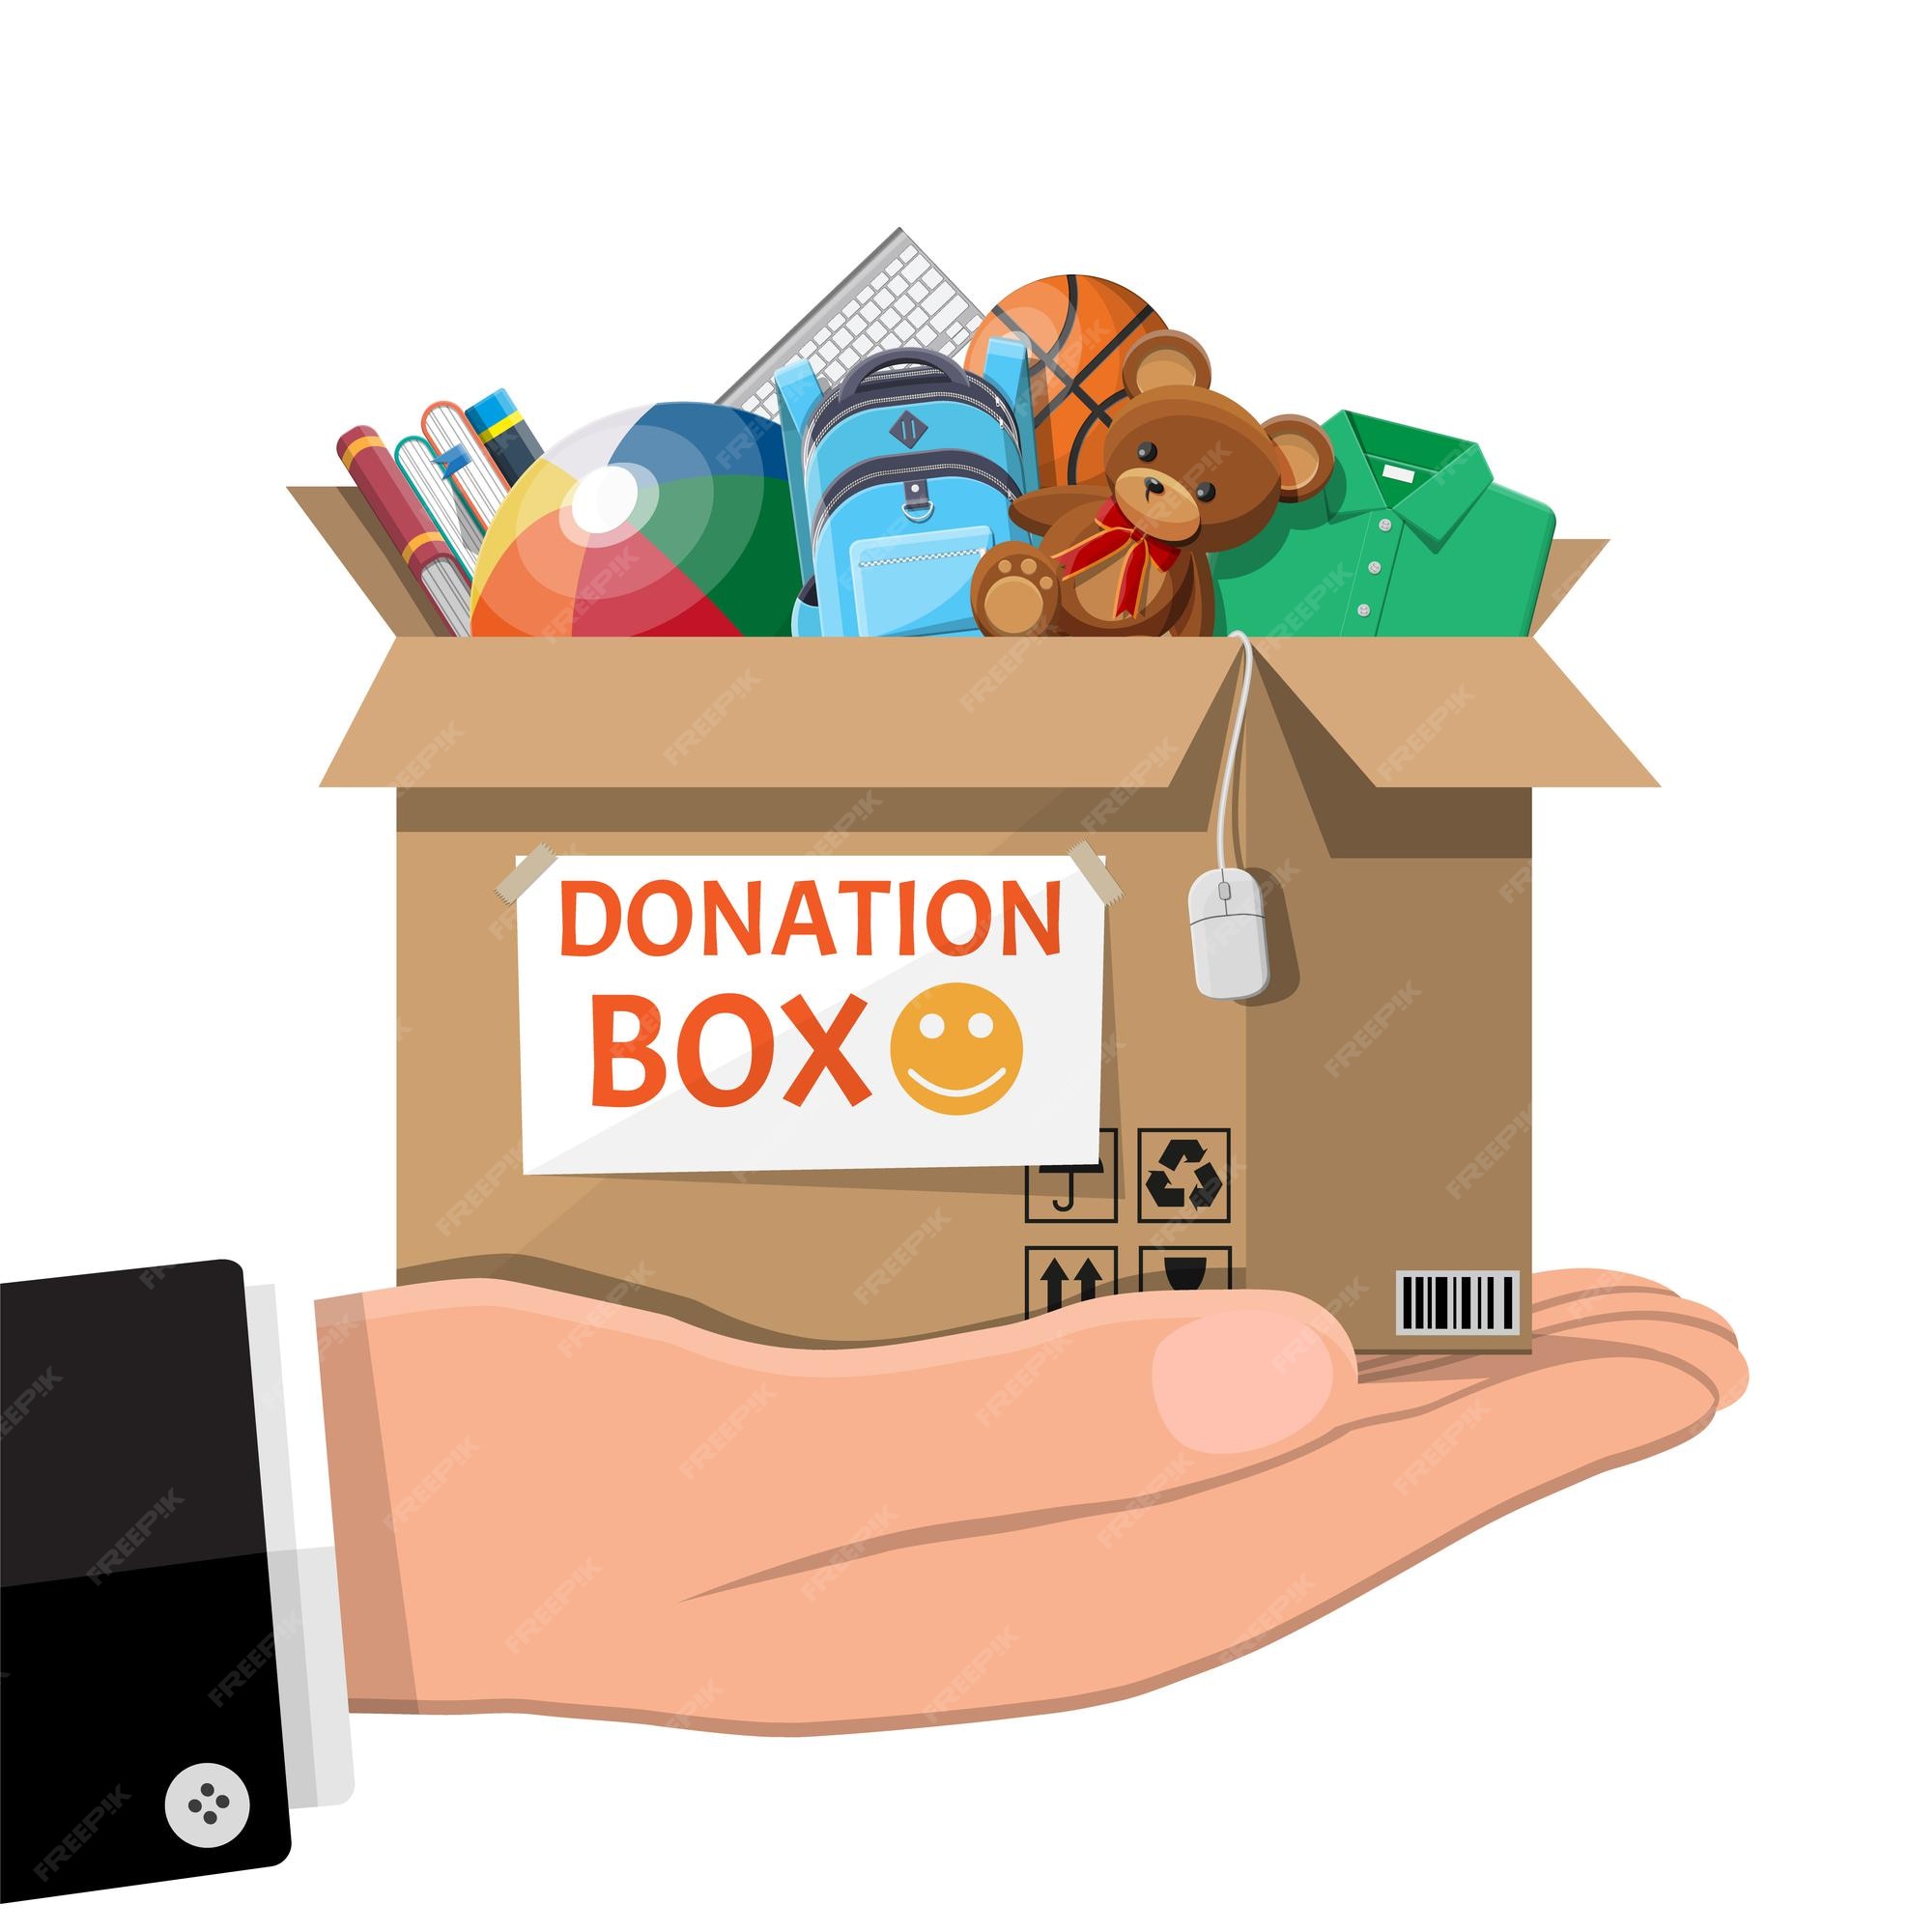 Caja de cartón para donaciones llena de juguetes, libros, ropa y  dispositivos. ayuda para niños, apoyo para niño pobre. donar recipiente en  mano. atención social, voluntariado, concepto de caridad. ilustración  vectorial plana |